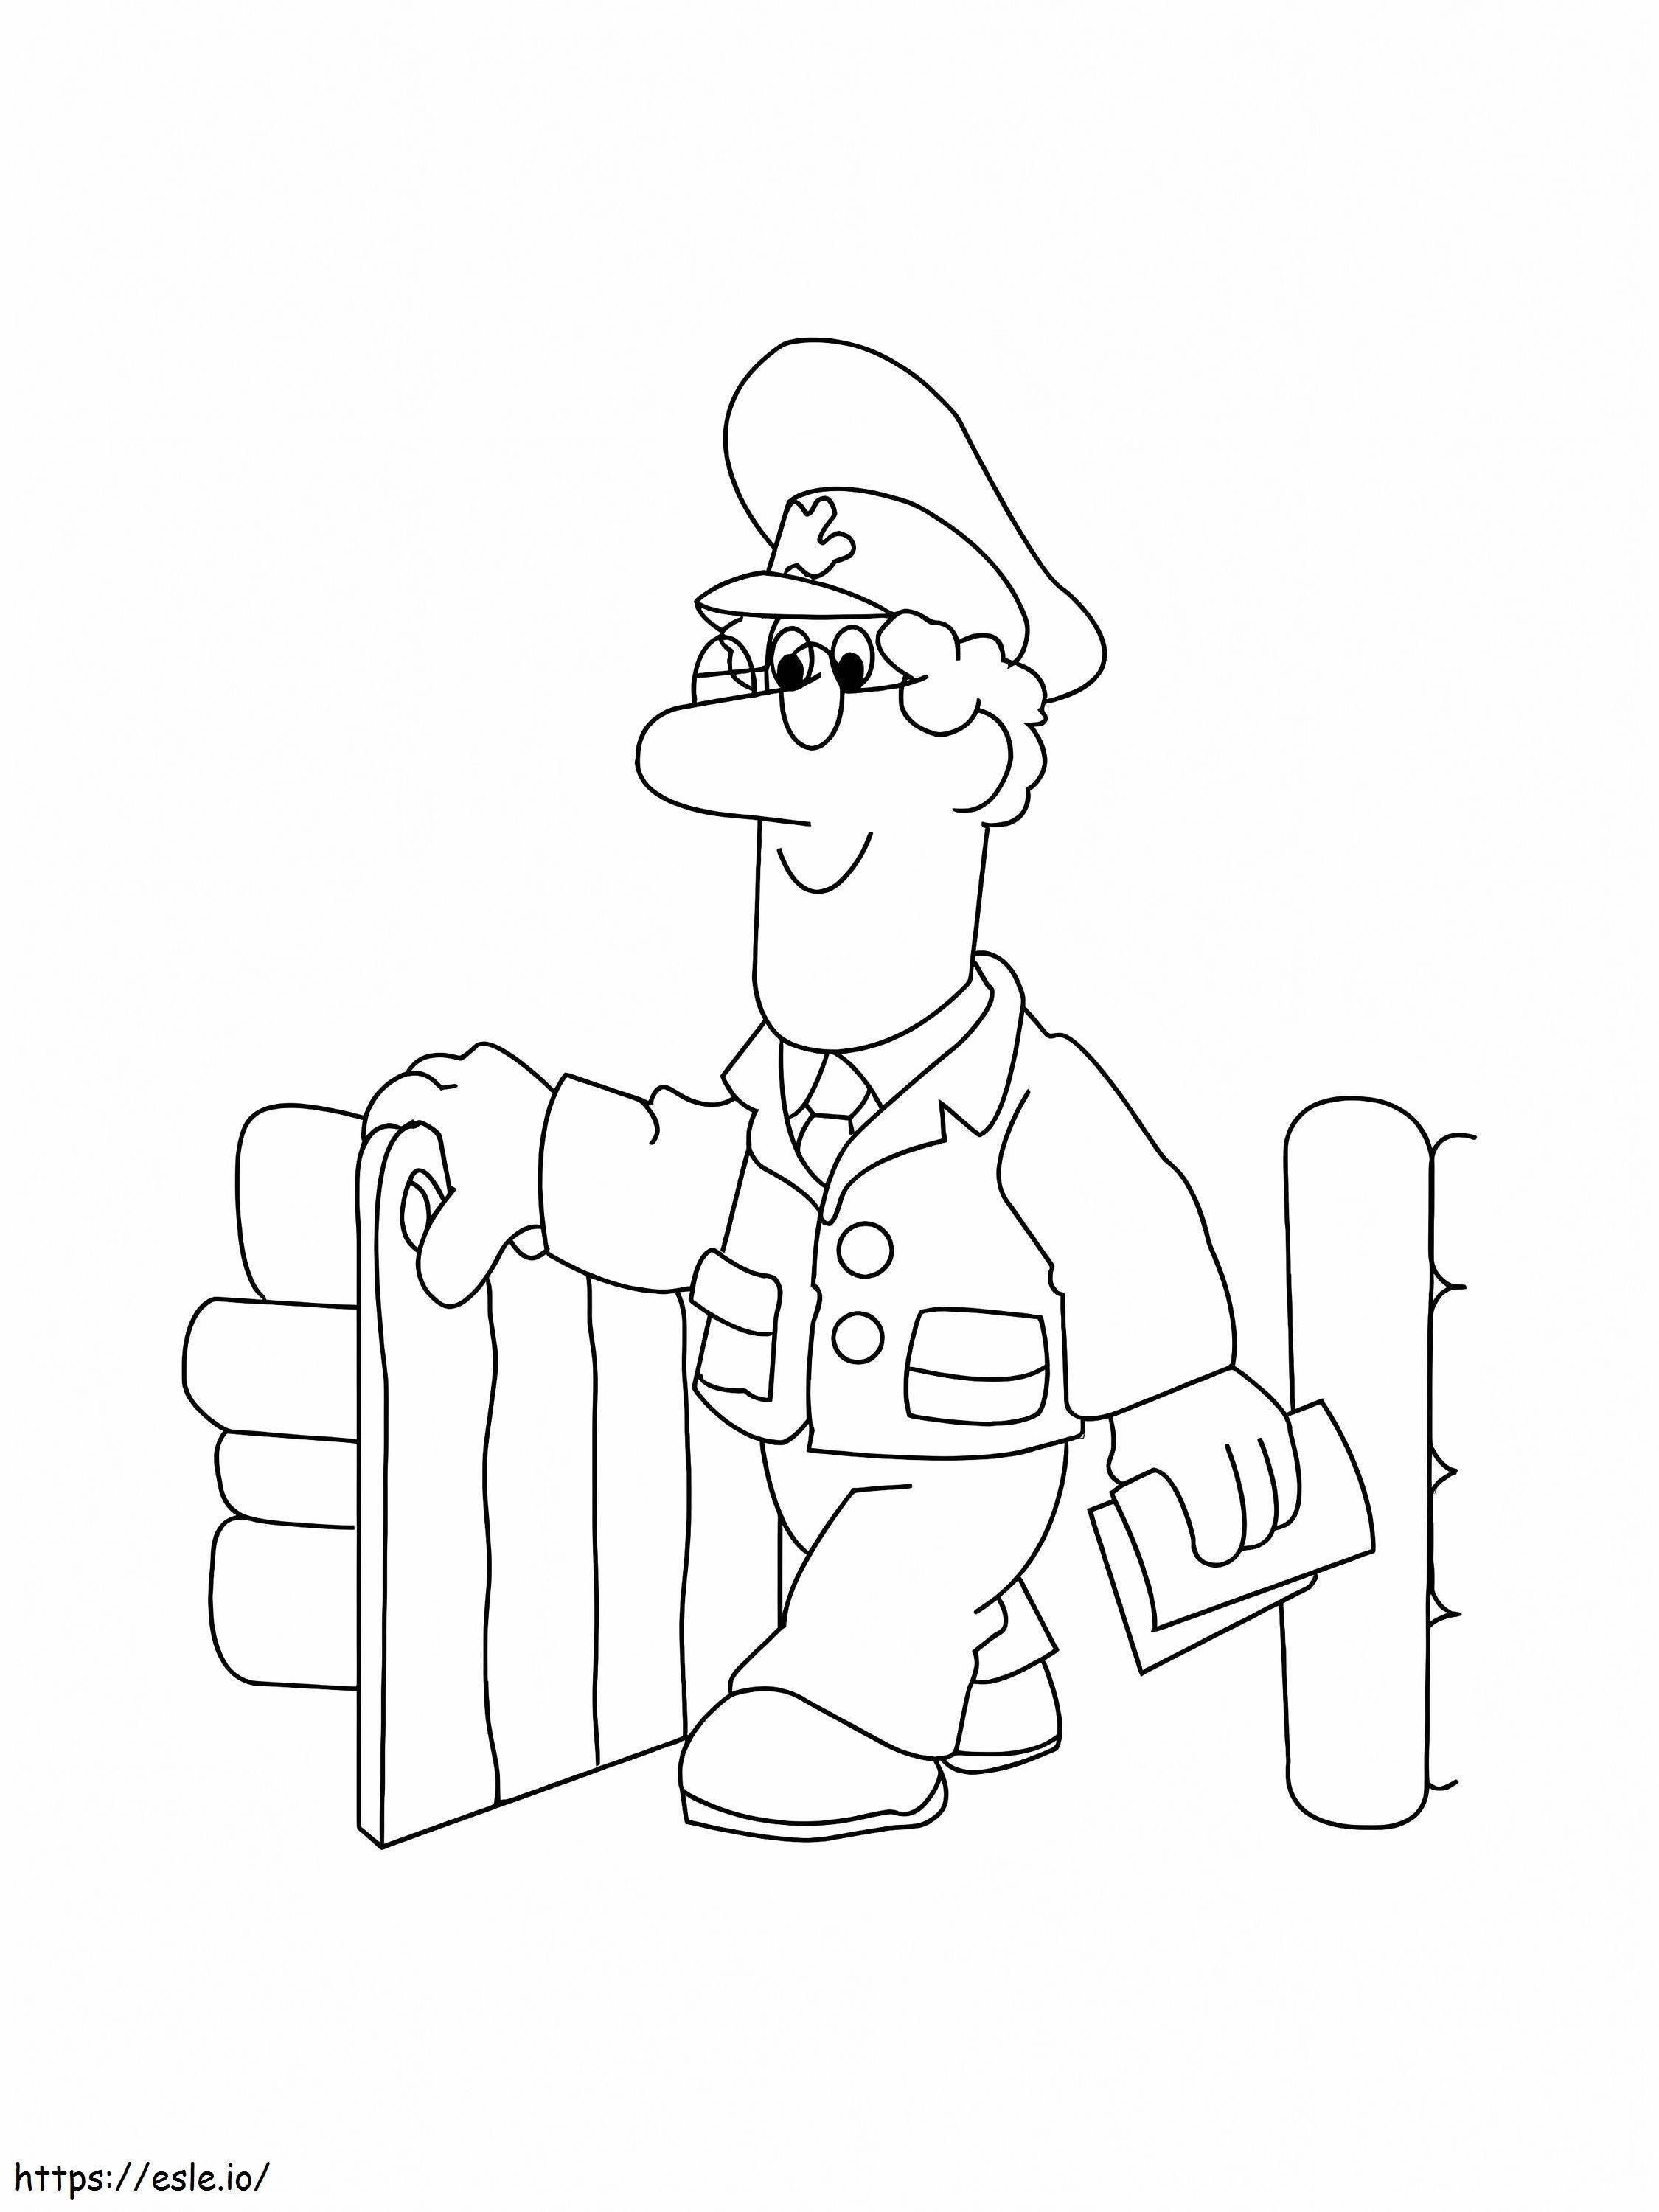 Postman Pat Smiling coloring page